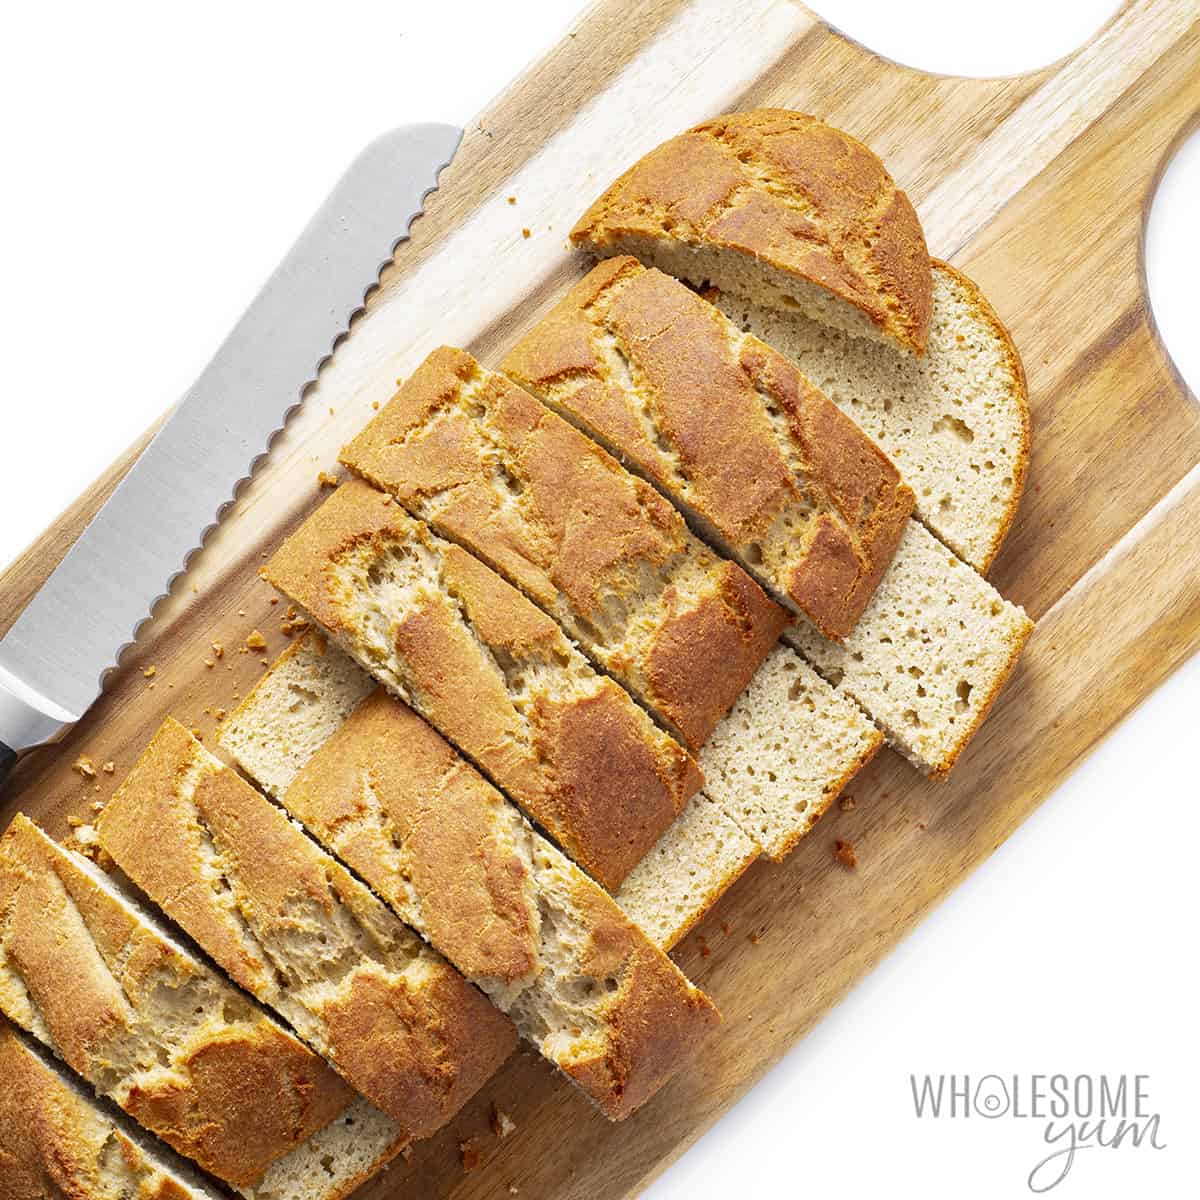 Sliced bread loaf on a cutting board.